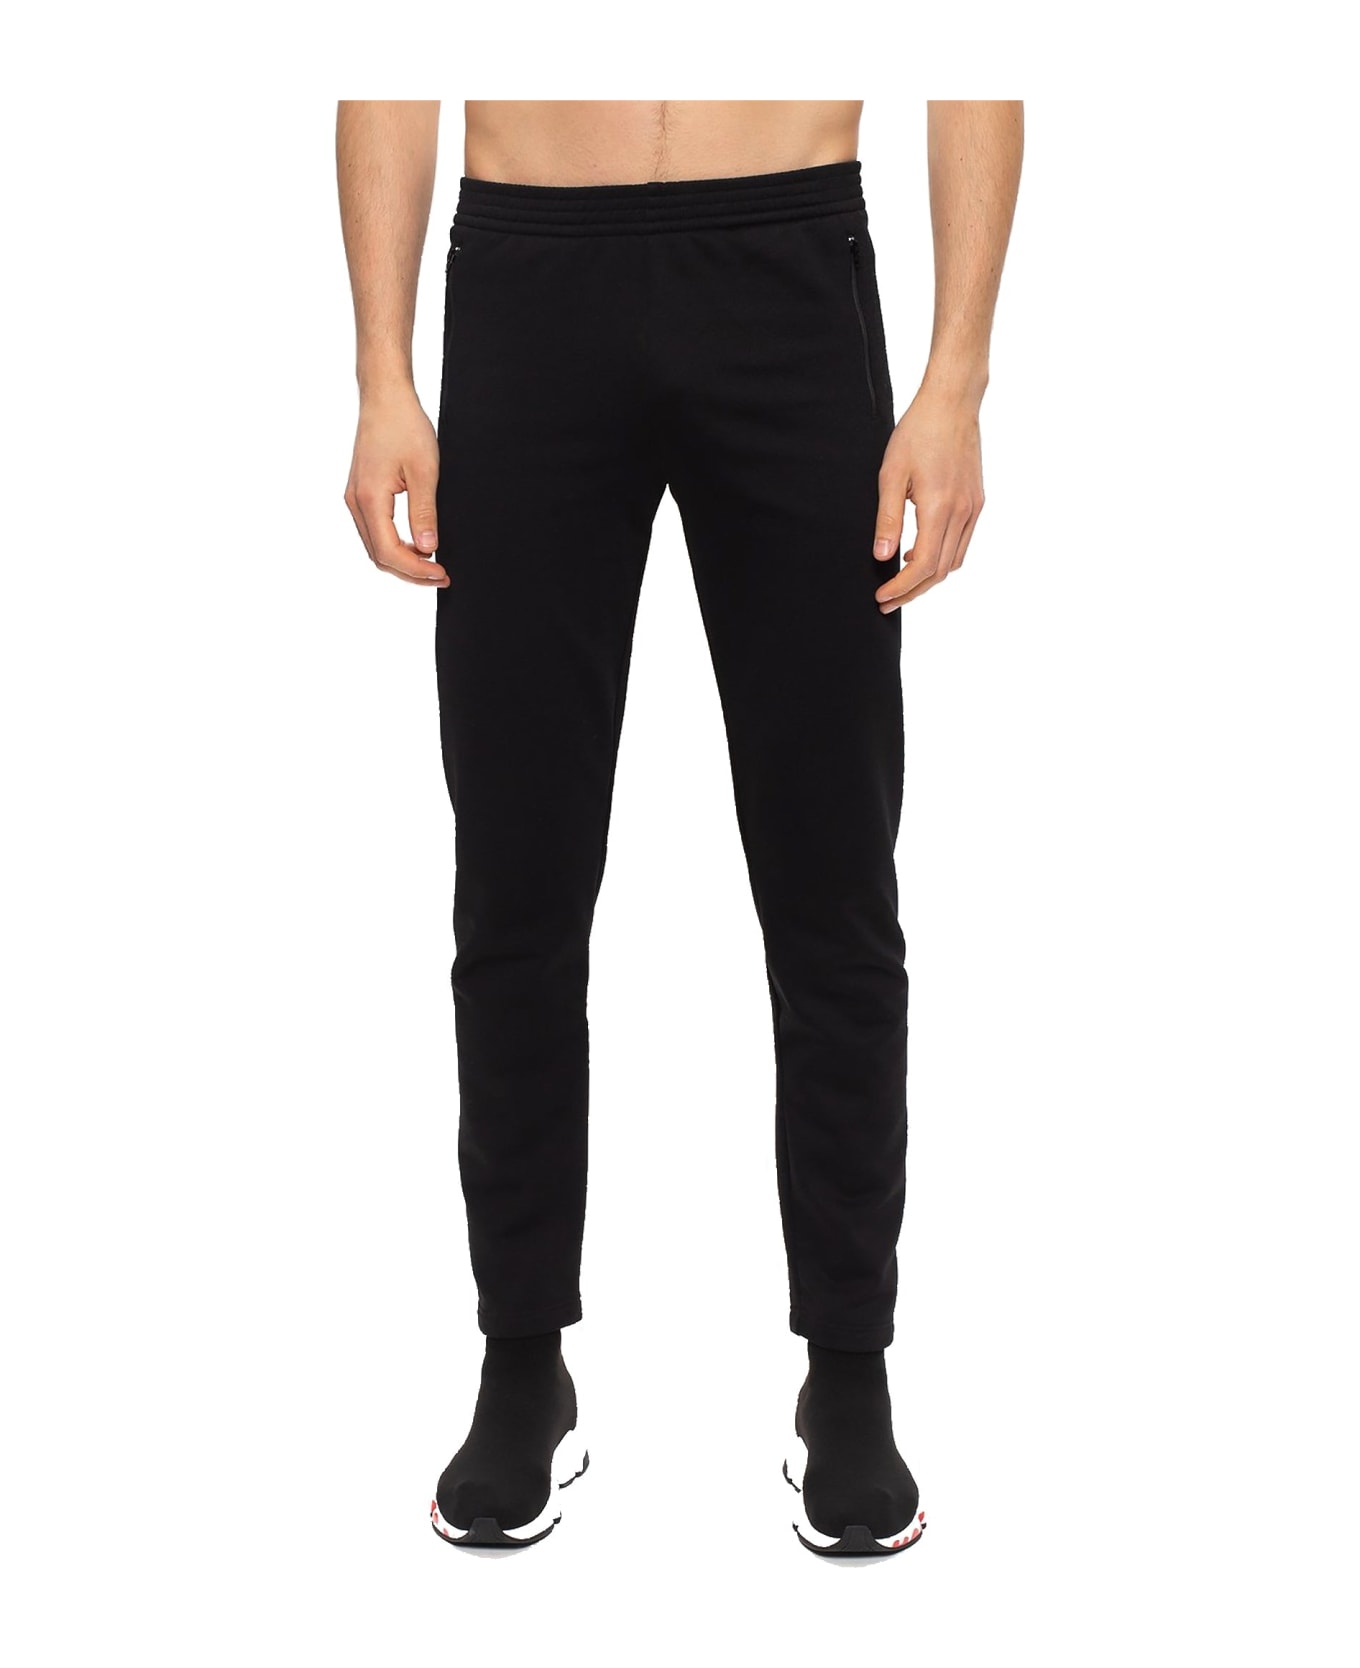 Balenciaga Cotton Pants - Black